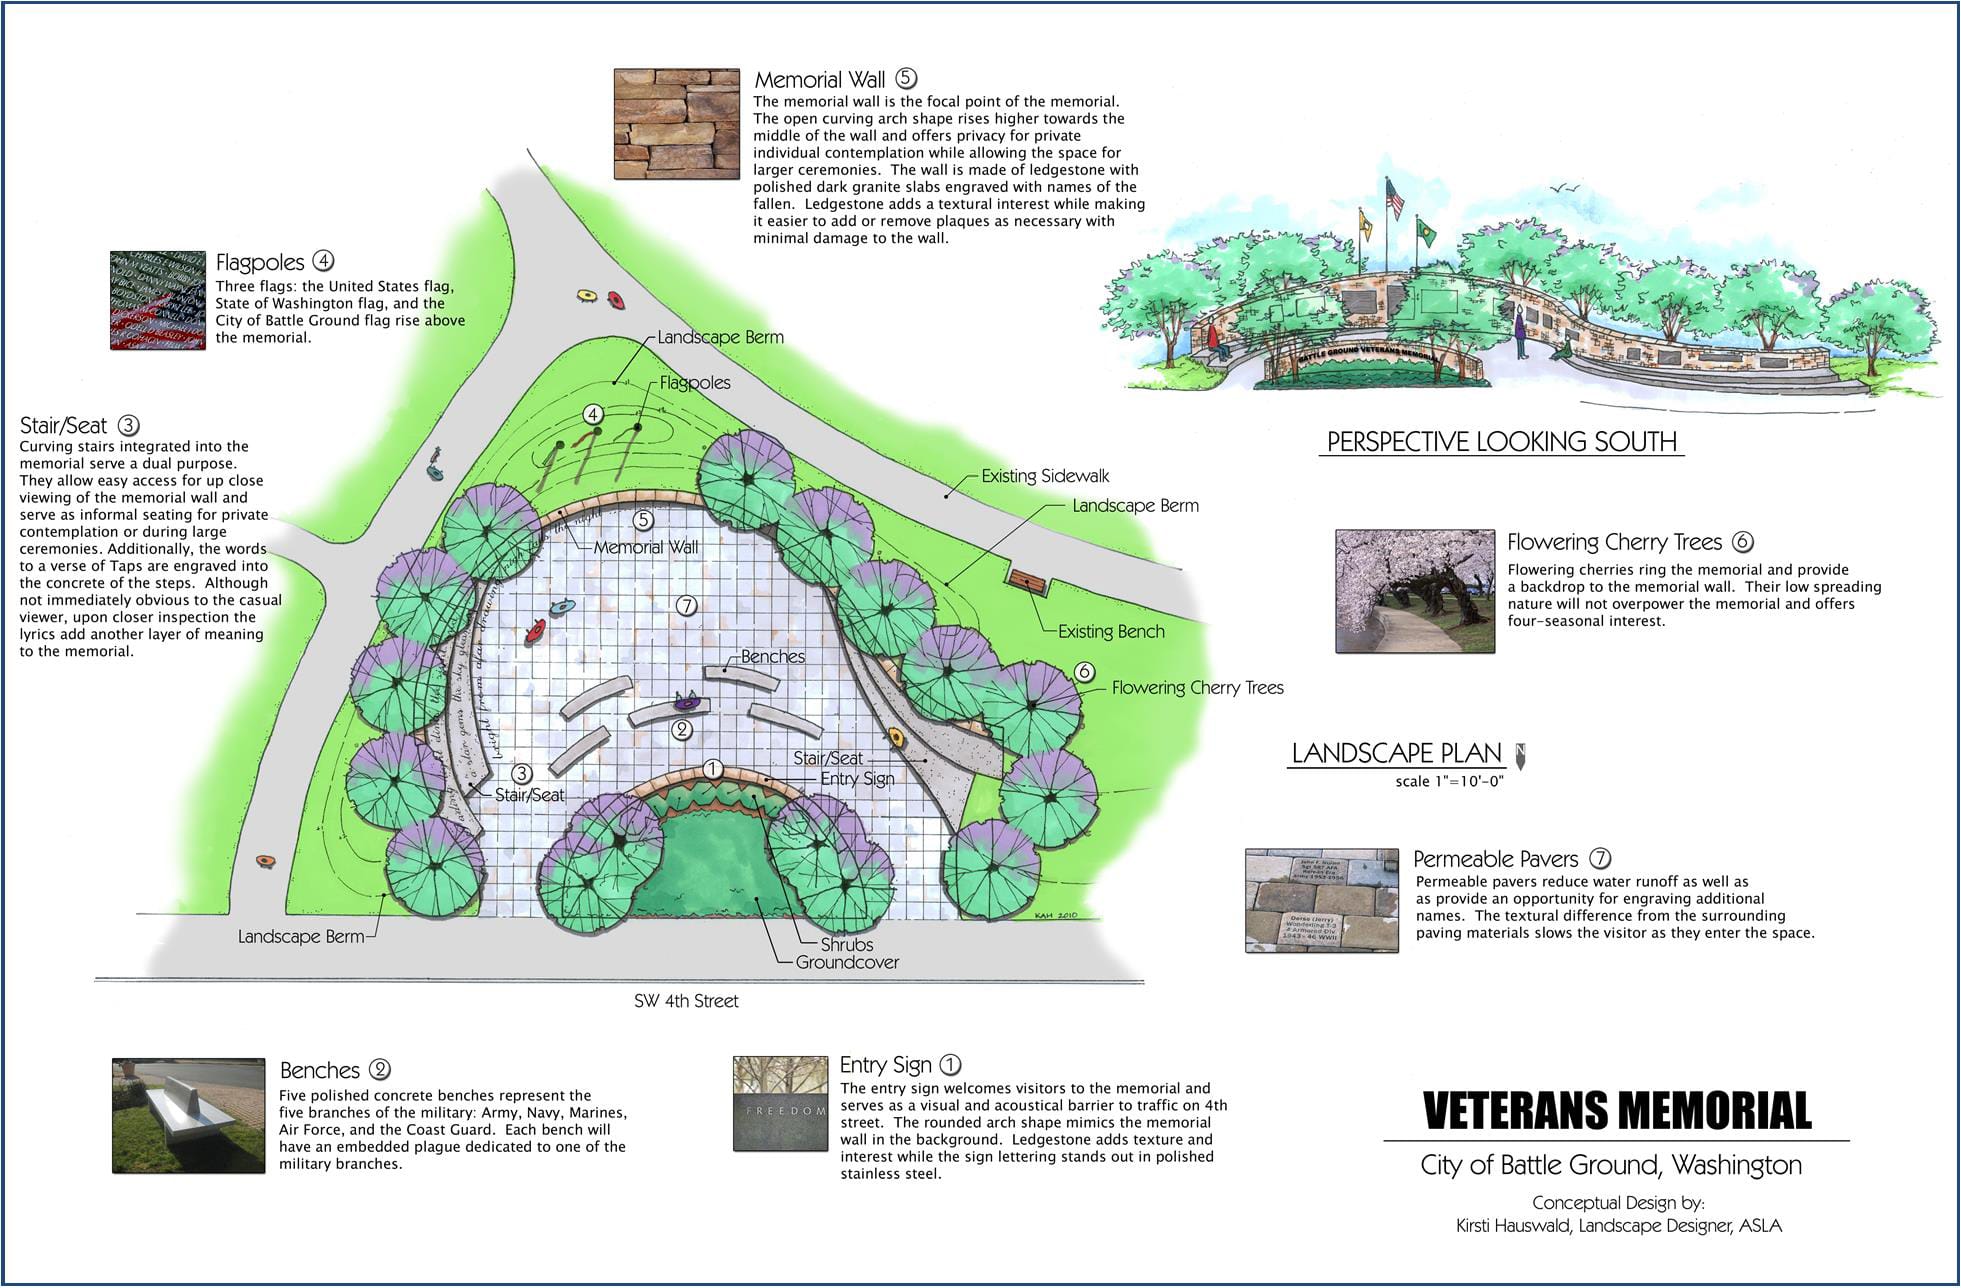 Plans for the Battle Ground Veterans Memorial